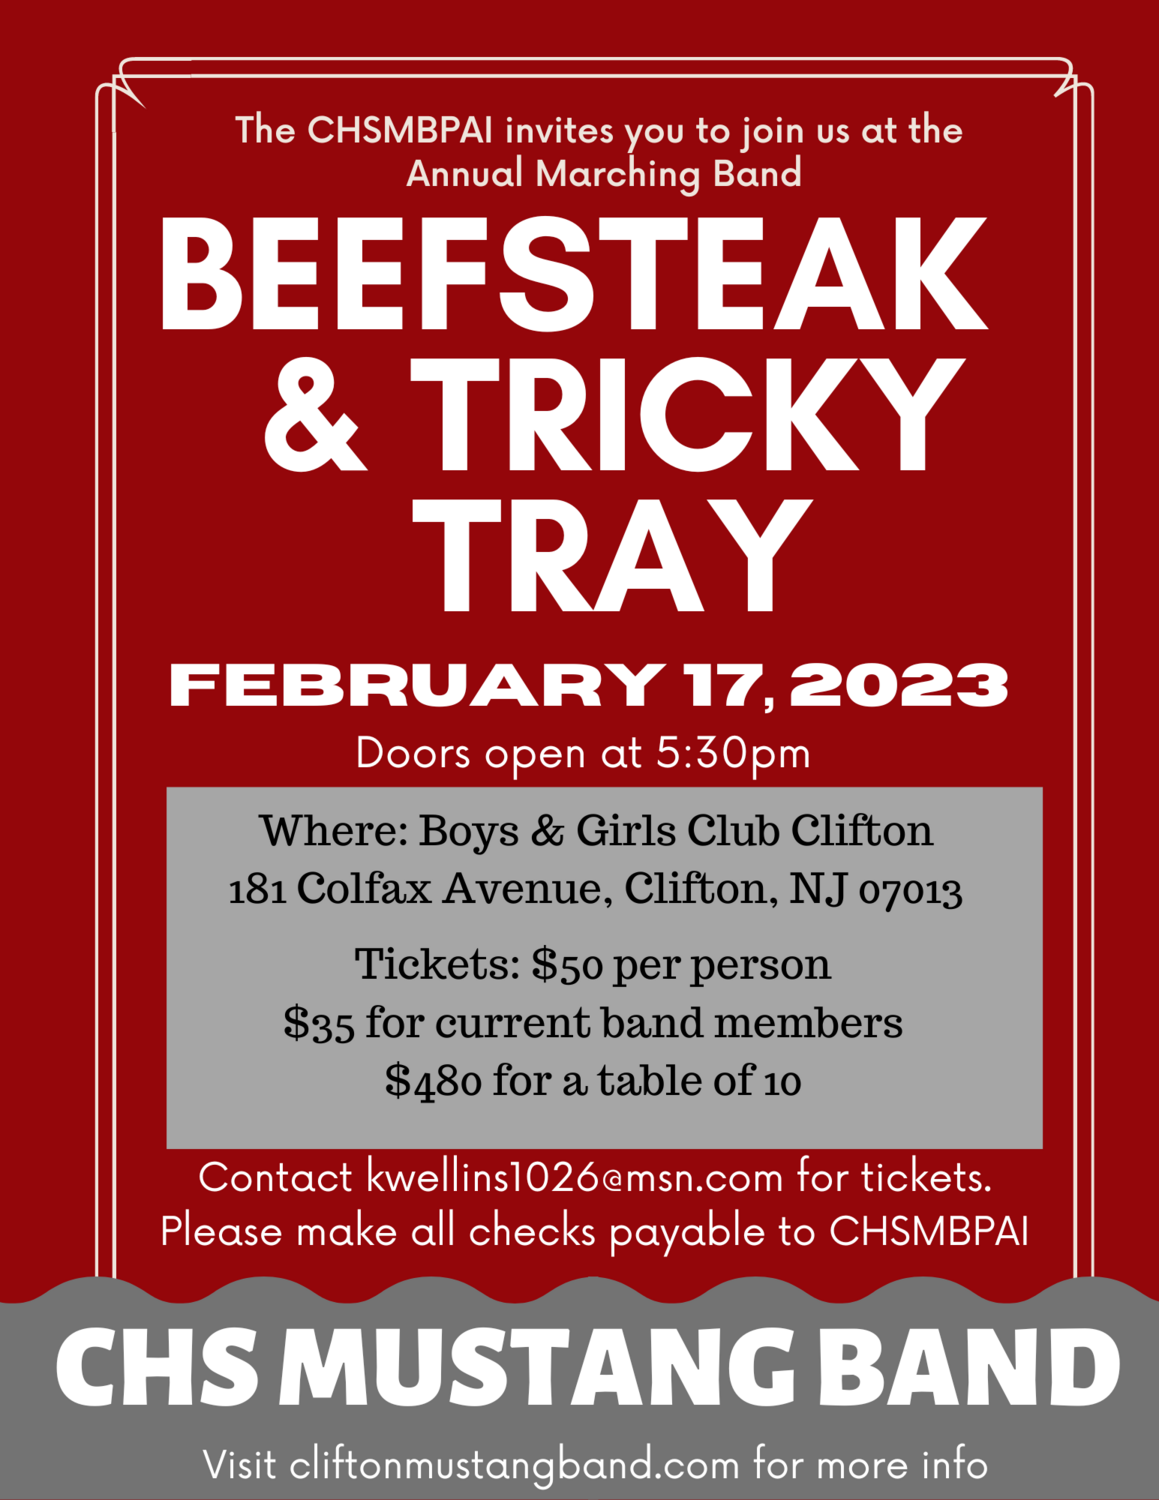 Beefsteak/Tricky Tray - Single Ticket